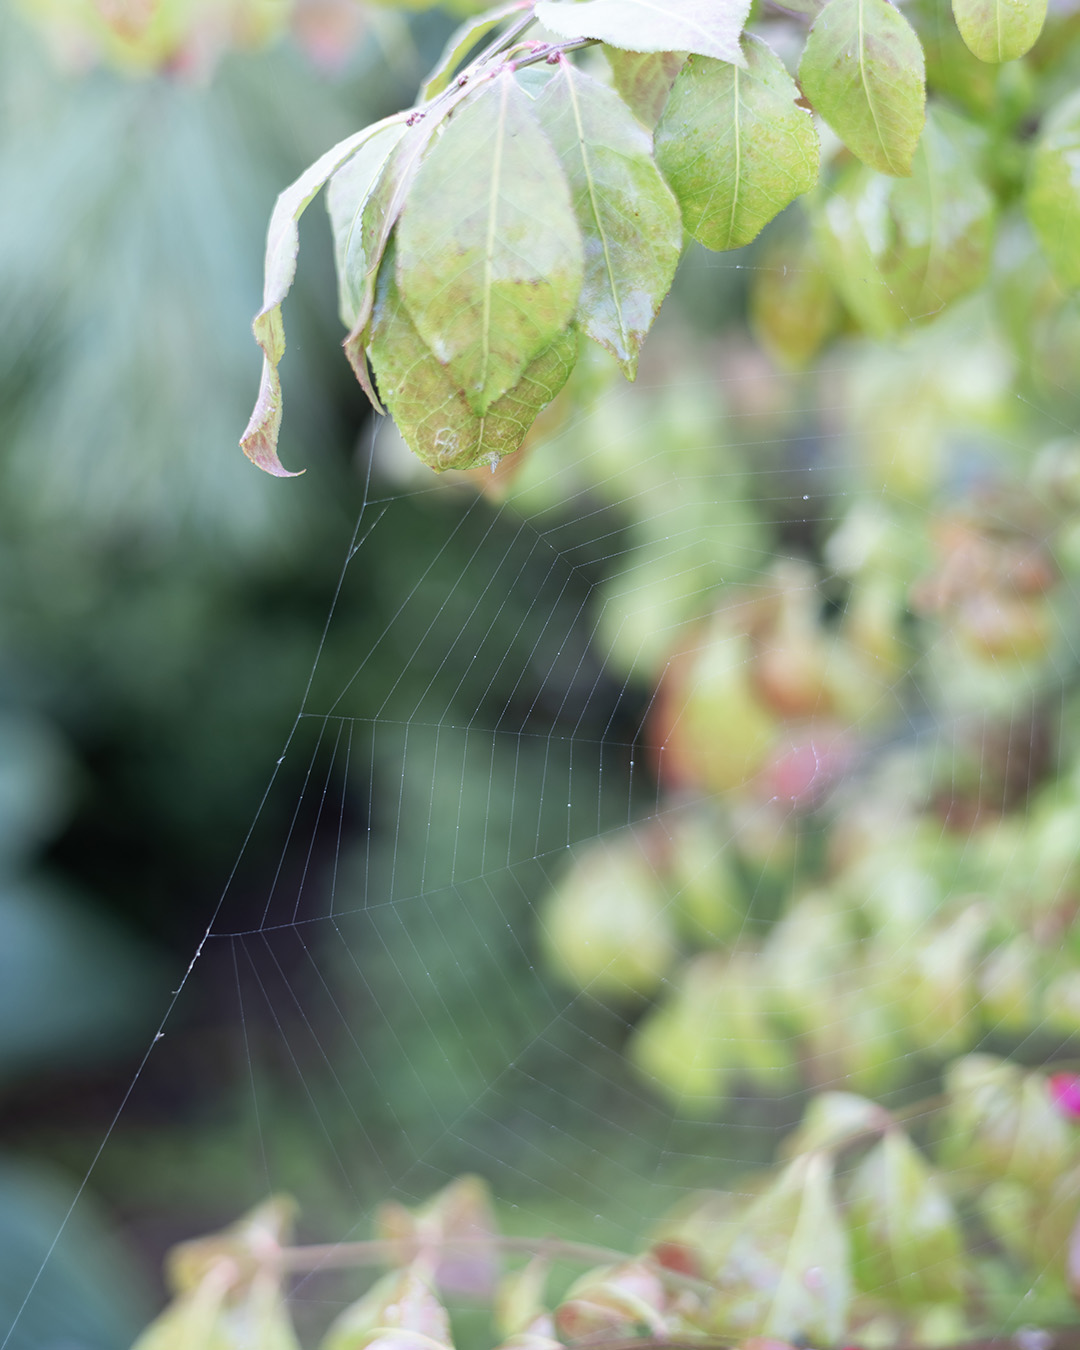 Spider web on a shrub